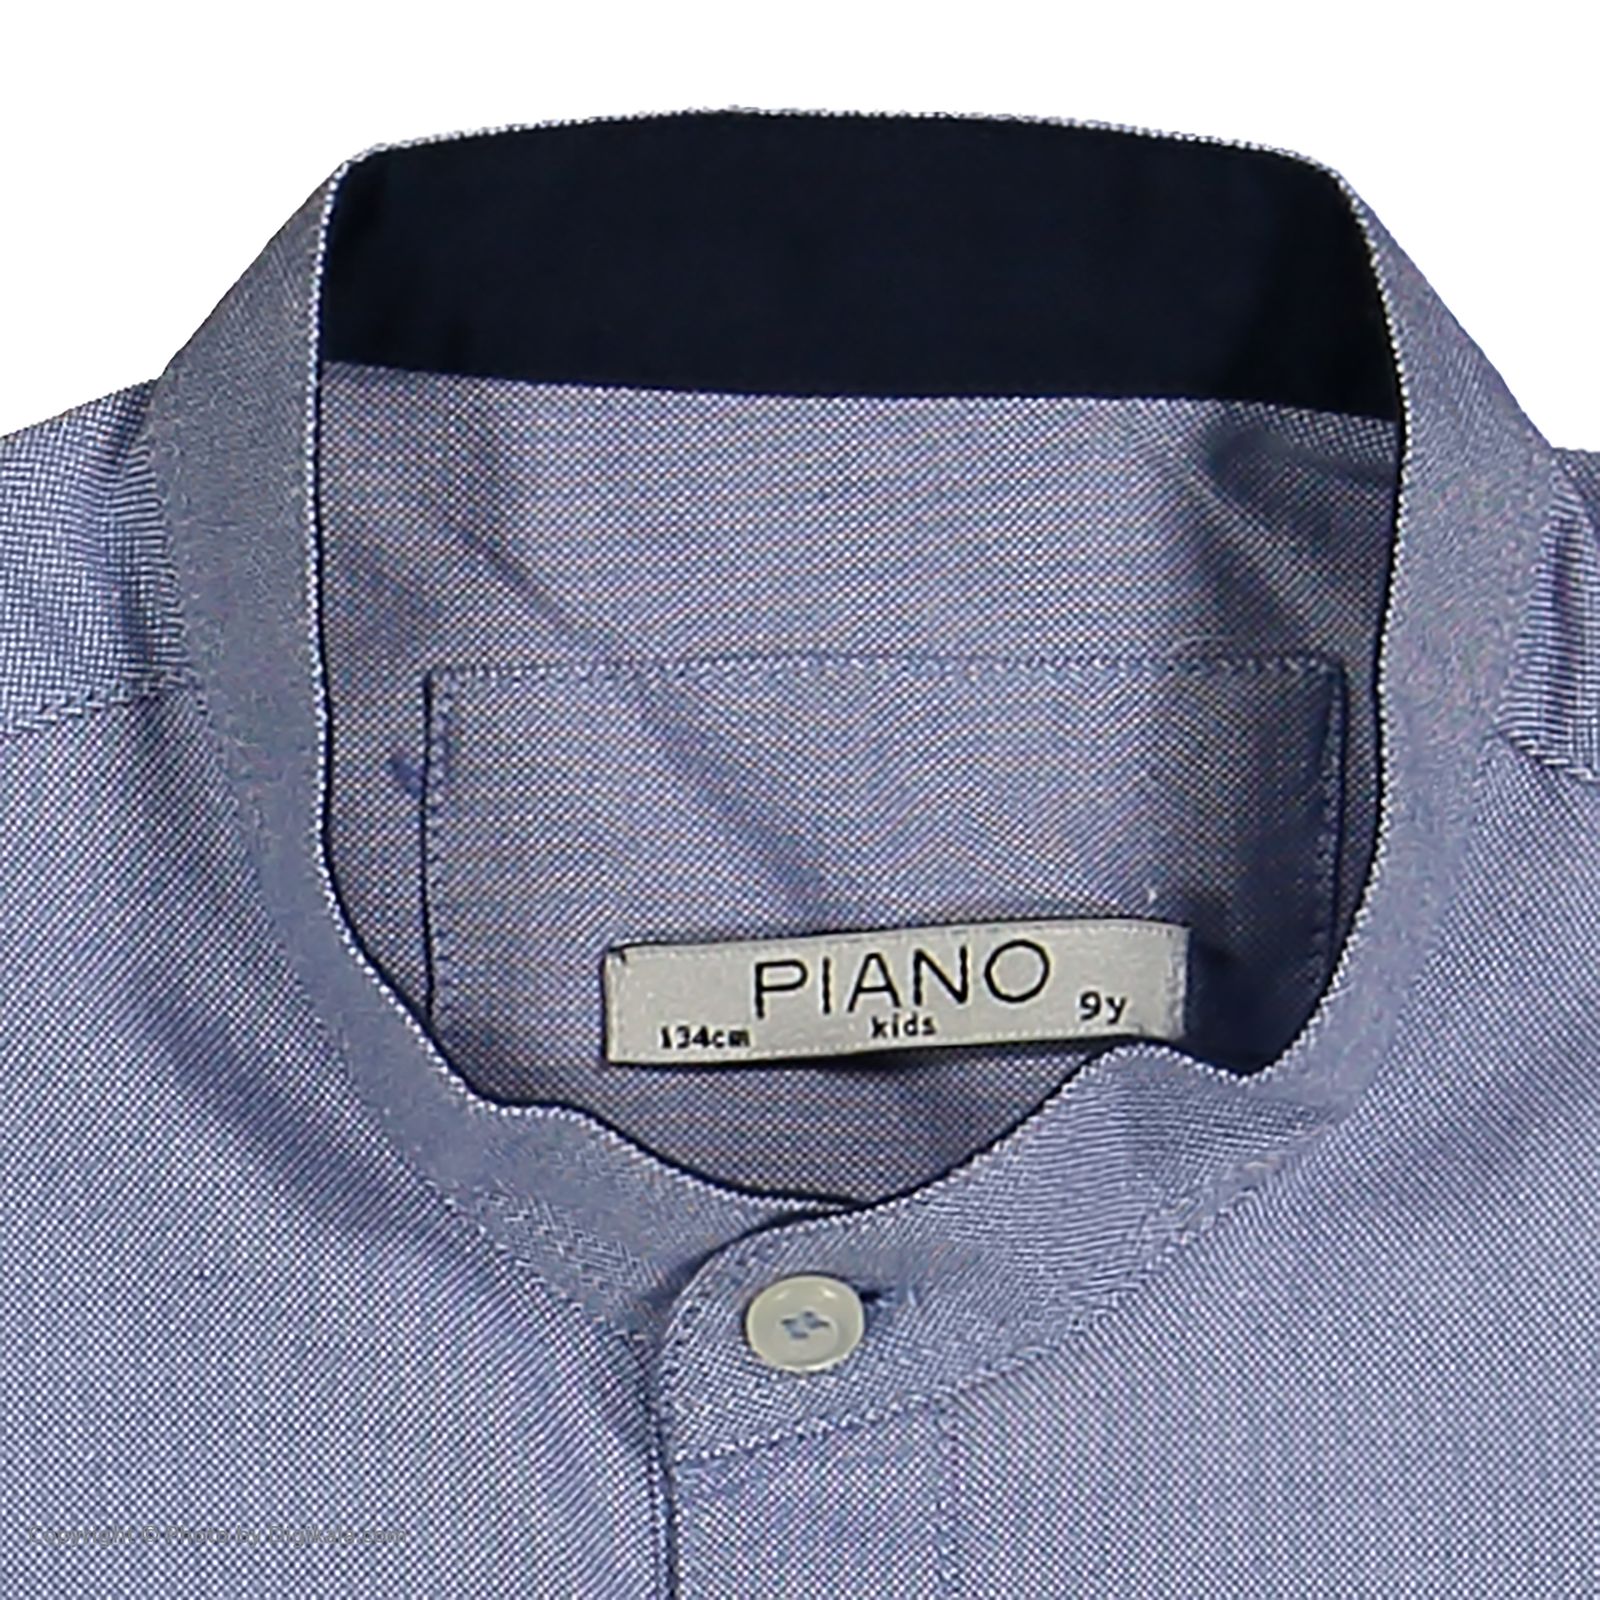 پیراهن پسرانه پیانو مدل 05393-77 -  - 5